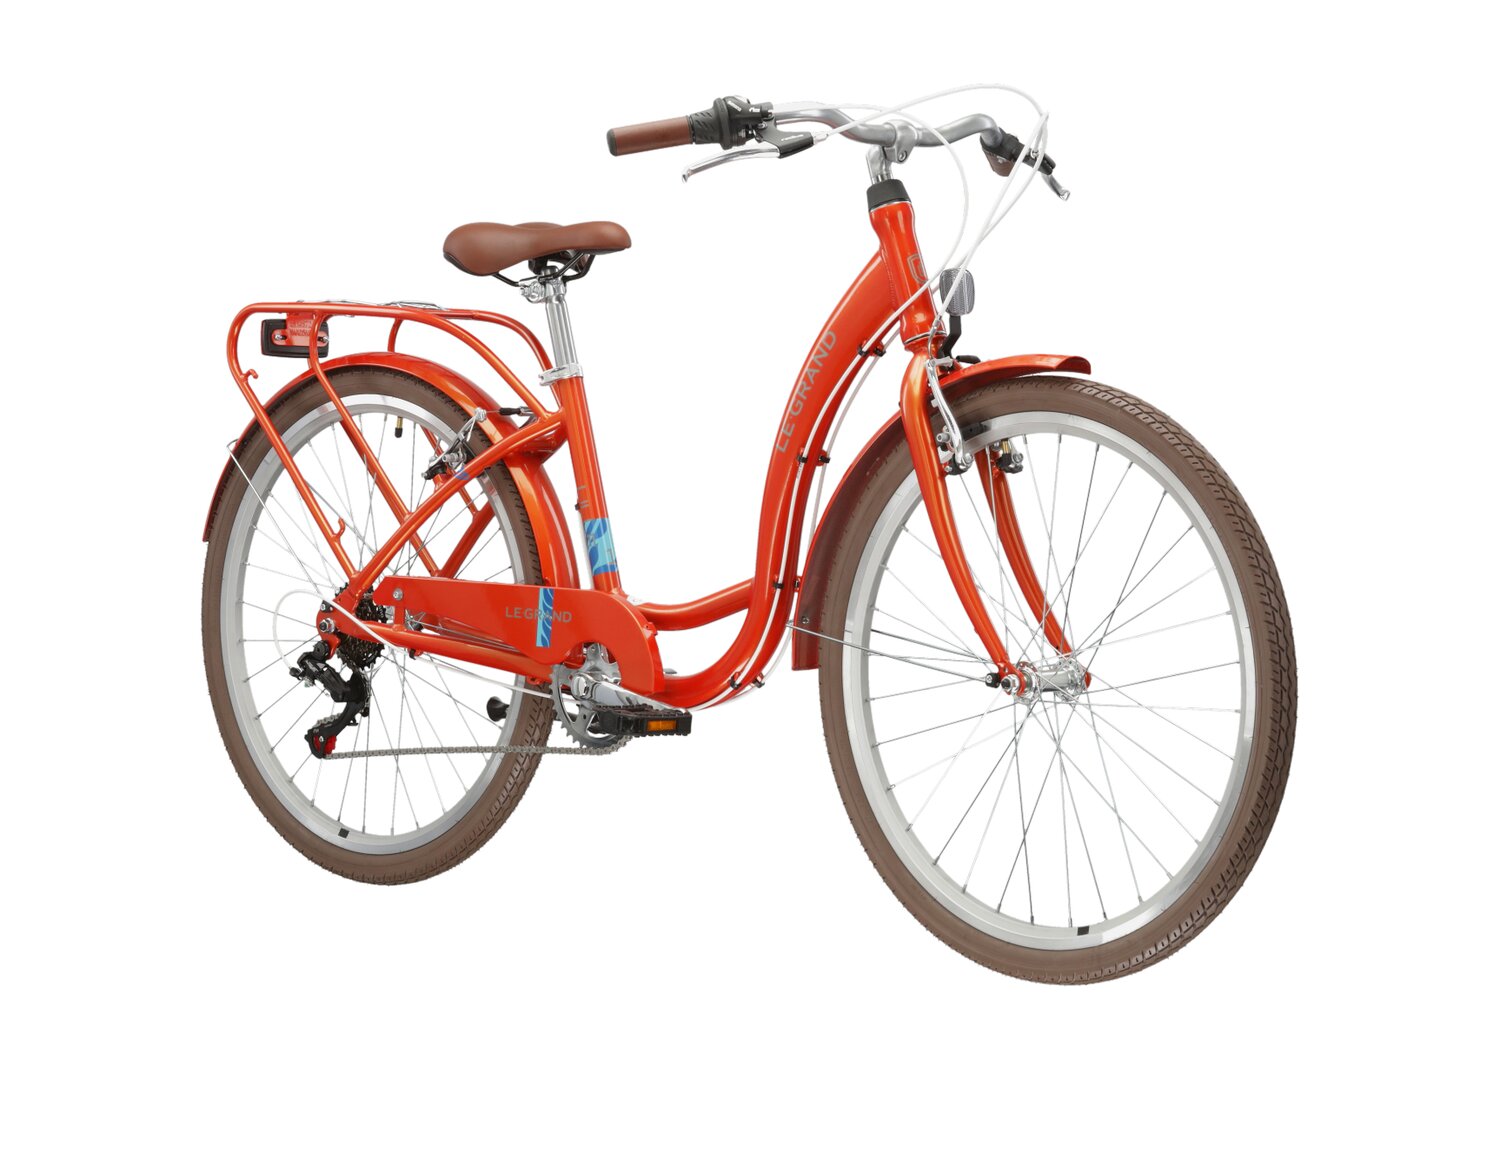  Rower miejski Le Grand Lille 1.0 na aluminiowej ramie w kolorze pomarańczowym wyposażony w osprzęt Shimano